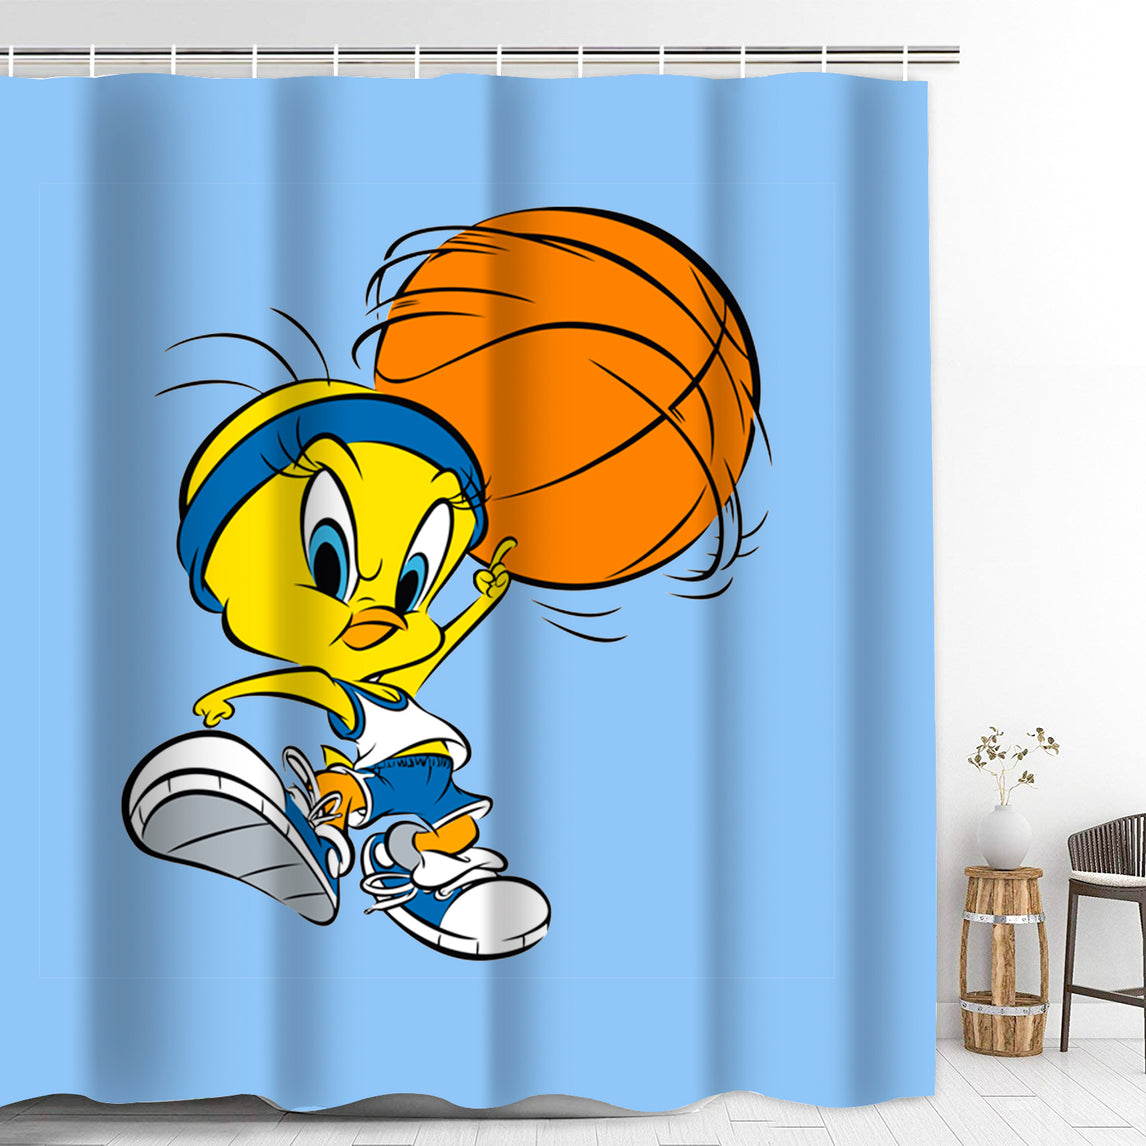 Tweety Bird Bathroom Shower Curtain With Hooks Prosgifts - roblox tweety bird code